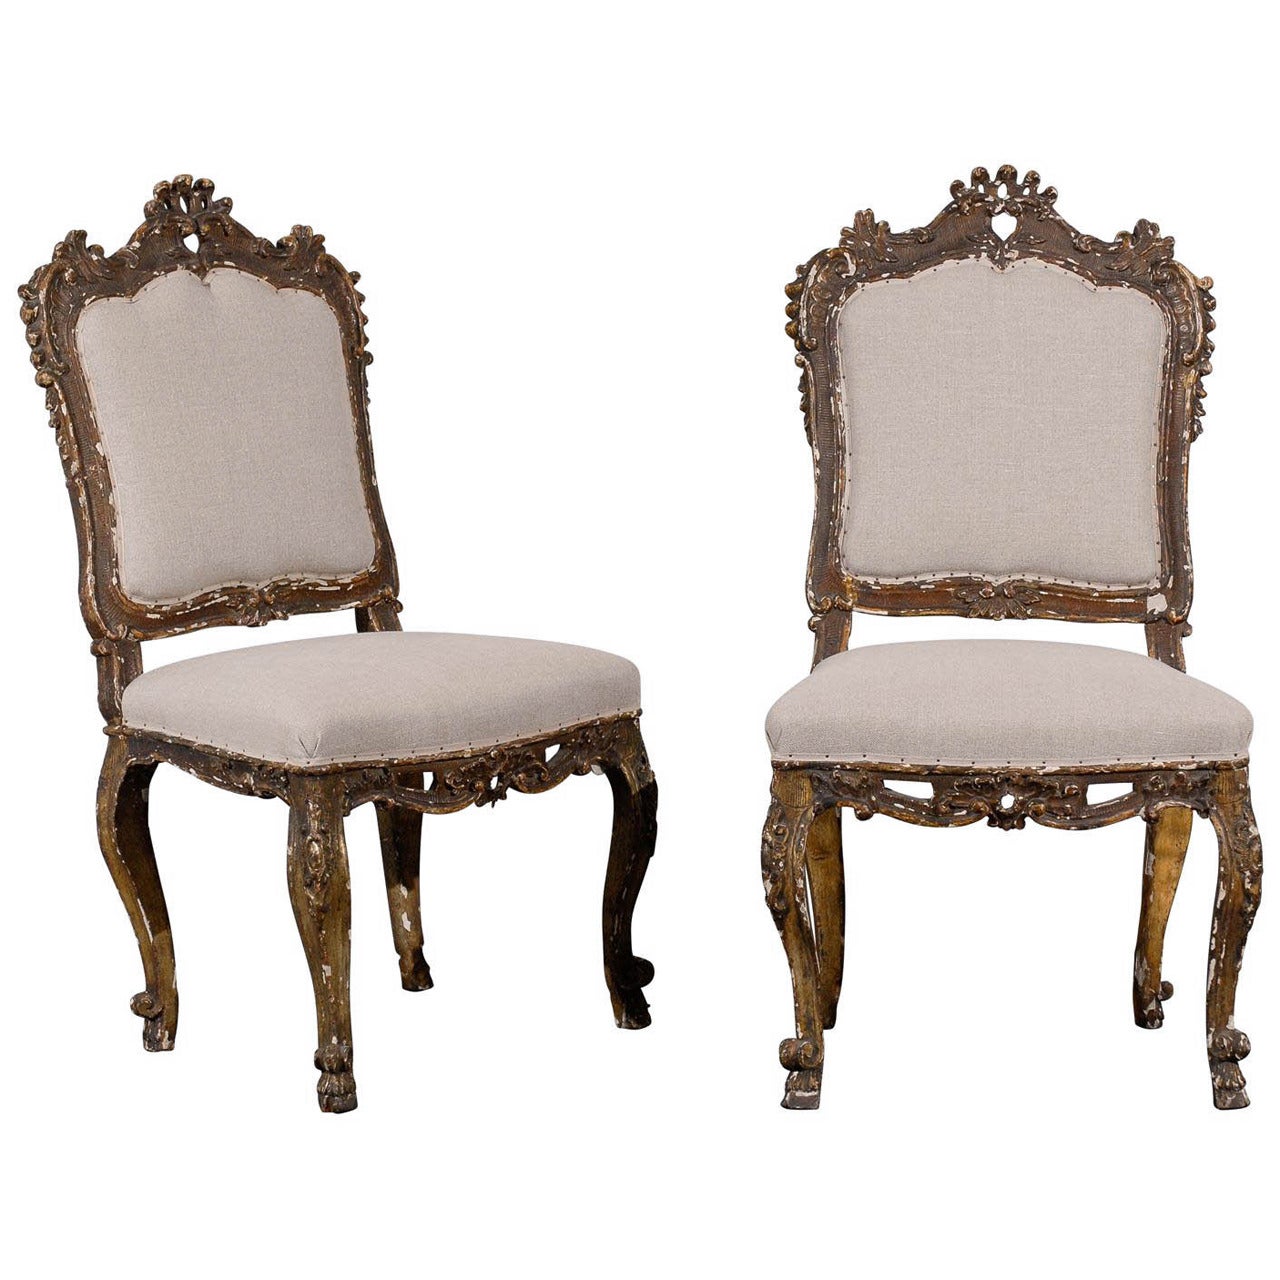 Paire de chaises d'appoint italiennes ornées, style vénitien du 18ème siècle